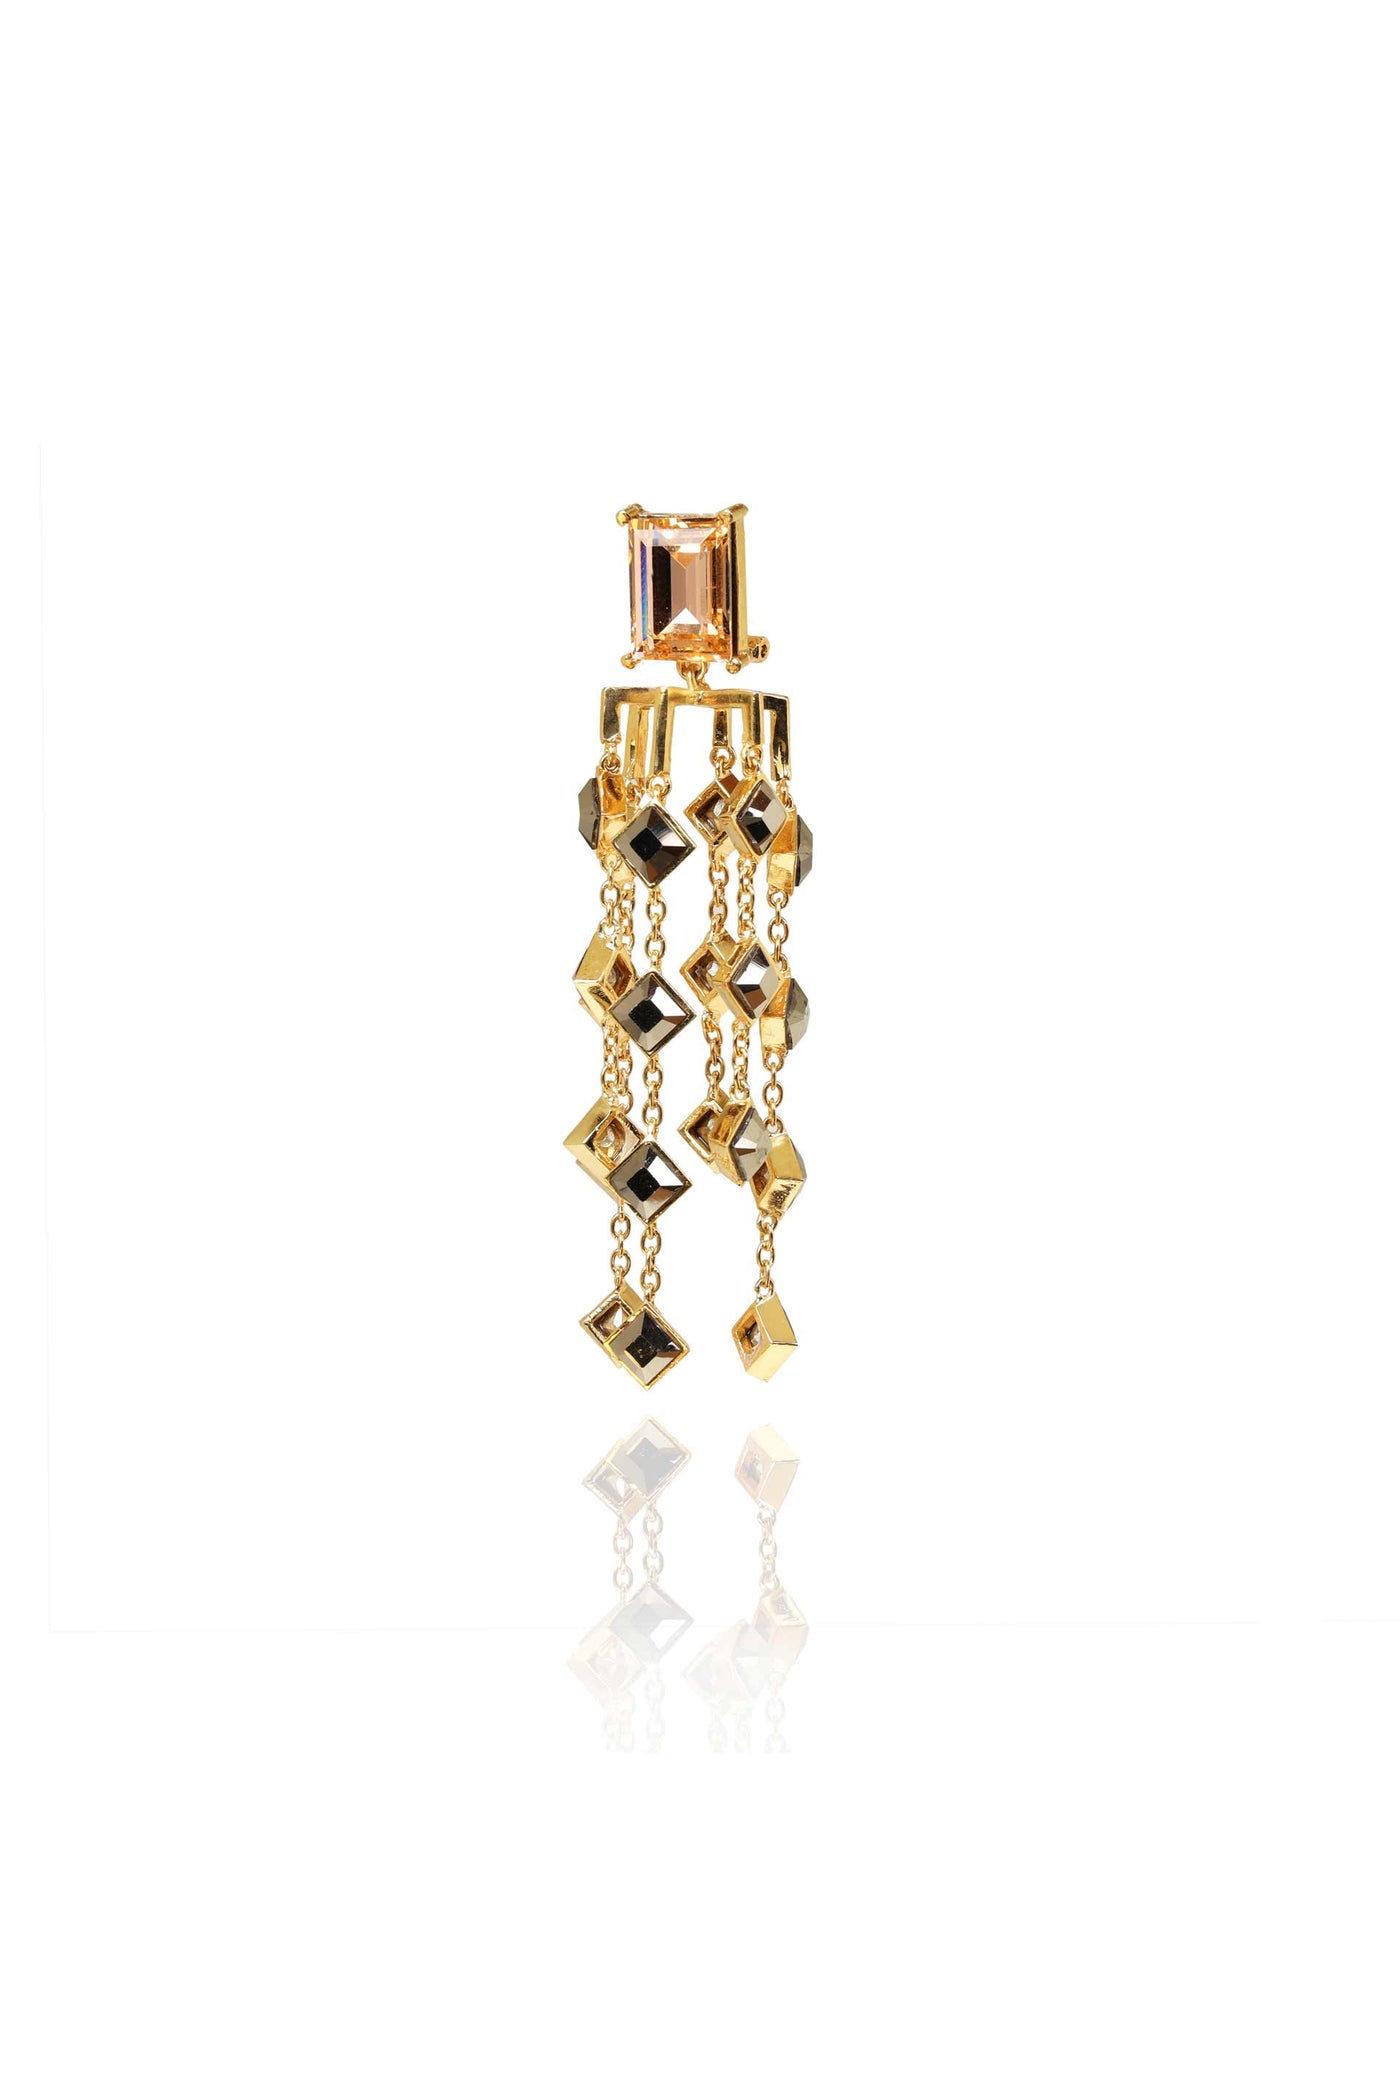 esme kathak earrings pink gold and metallic grey fashion jewellery indian designer wear online shopping melange singapore